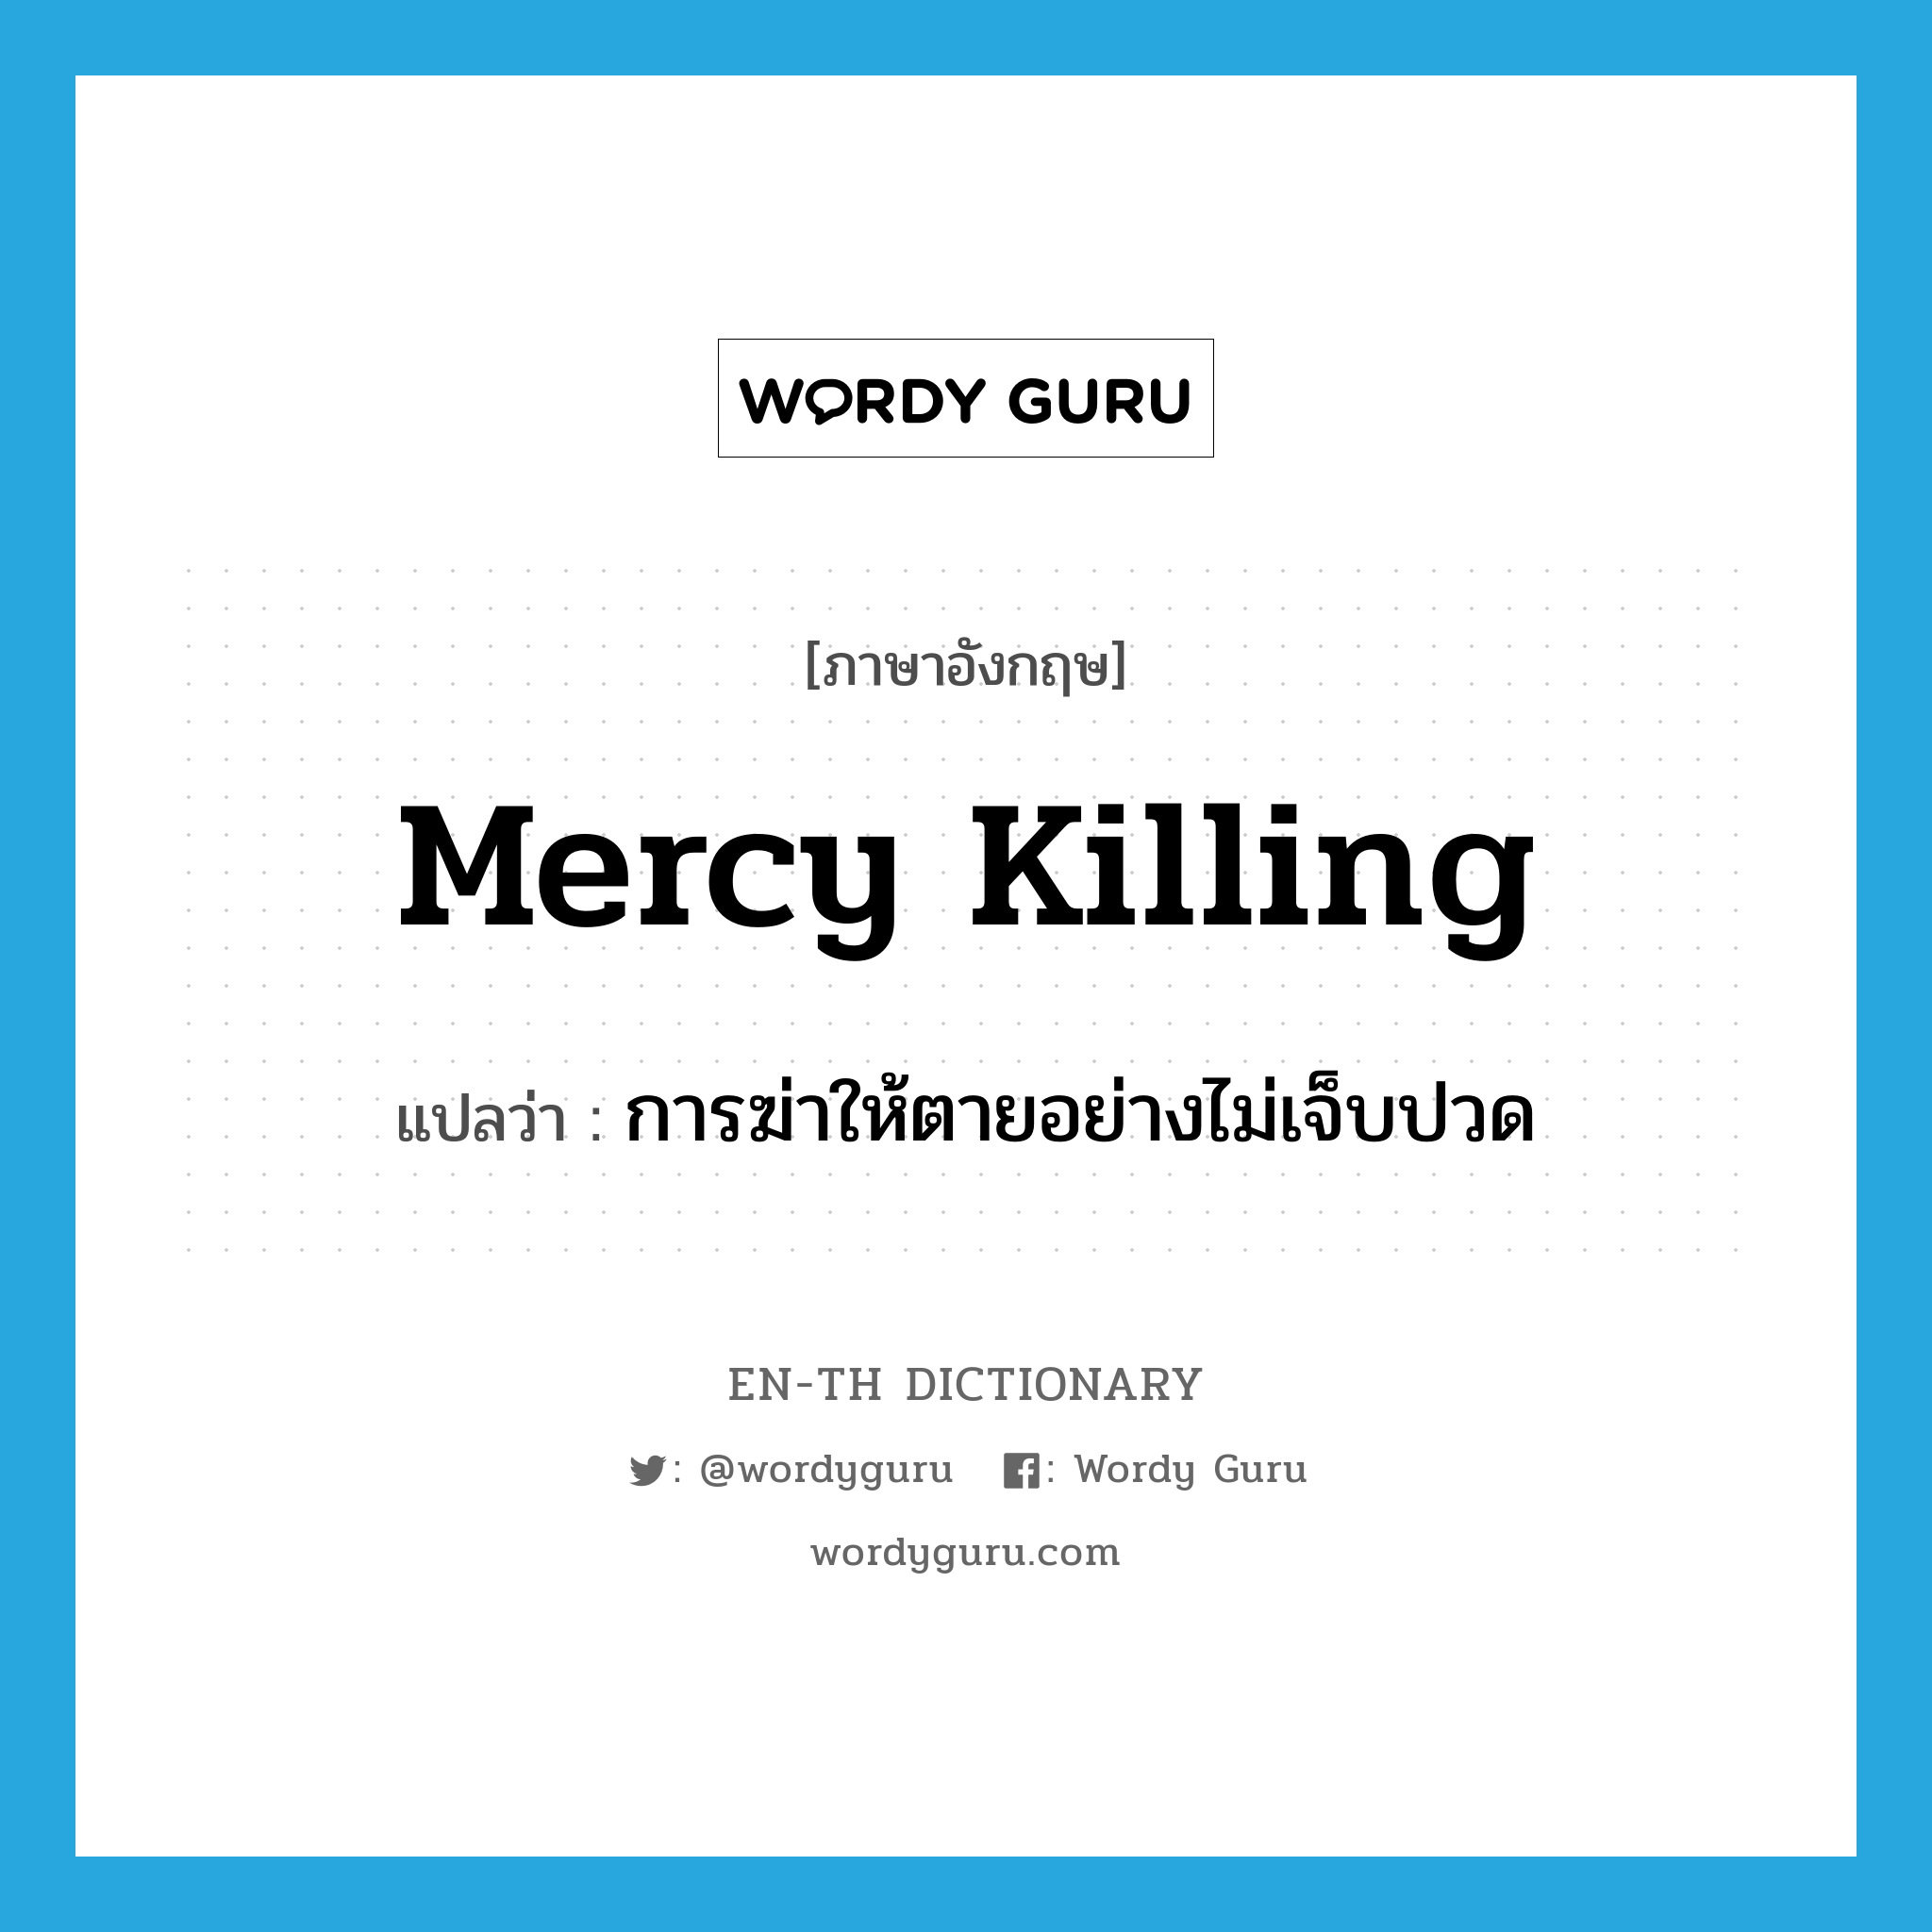 การฆ่าให้ตายอย่างไม่เจ็บปวด ภาษาอังกฤษ?, คำศัพท์ภาษาอังกฤษ การฆ่าให้ตายอย่างไม่เจ็บปวด แปลว่า mercy killing ประเภท N หมวด N